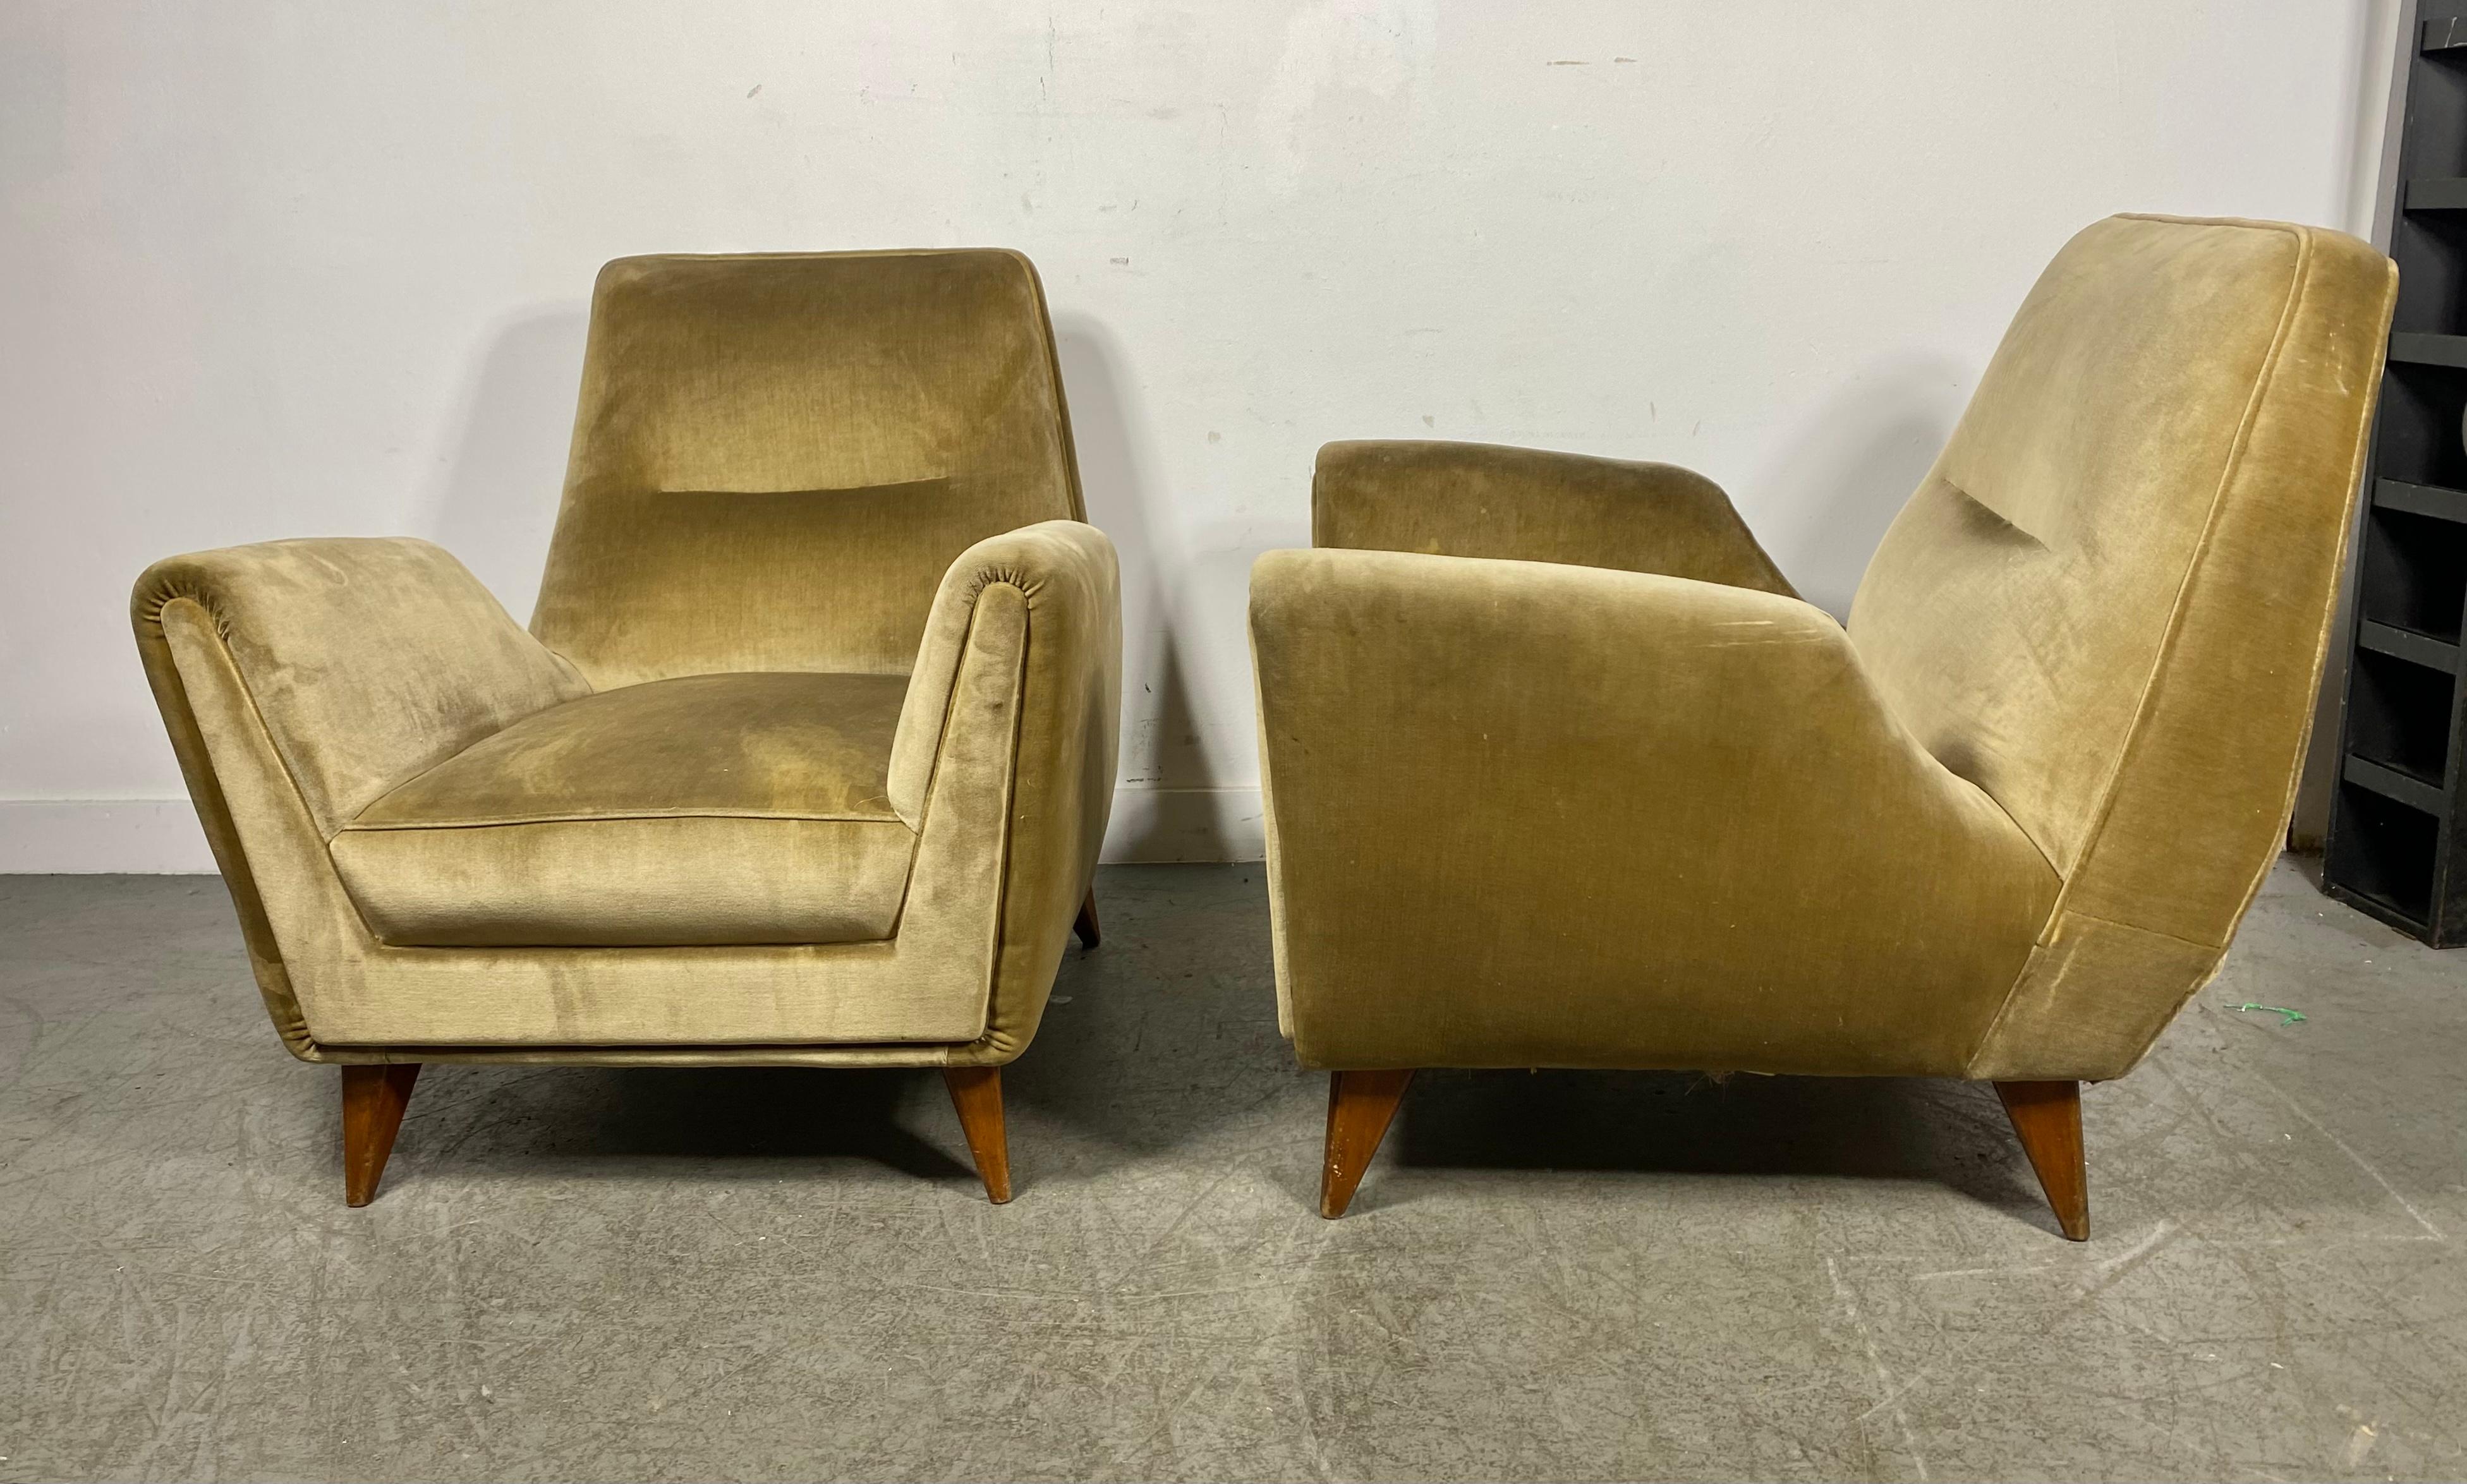 Stunning Pair Italian Modernist Lounge Chairs by Isa Bergamo & Att Gio Ponti 1